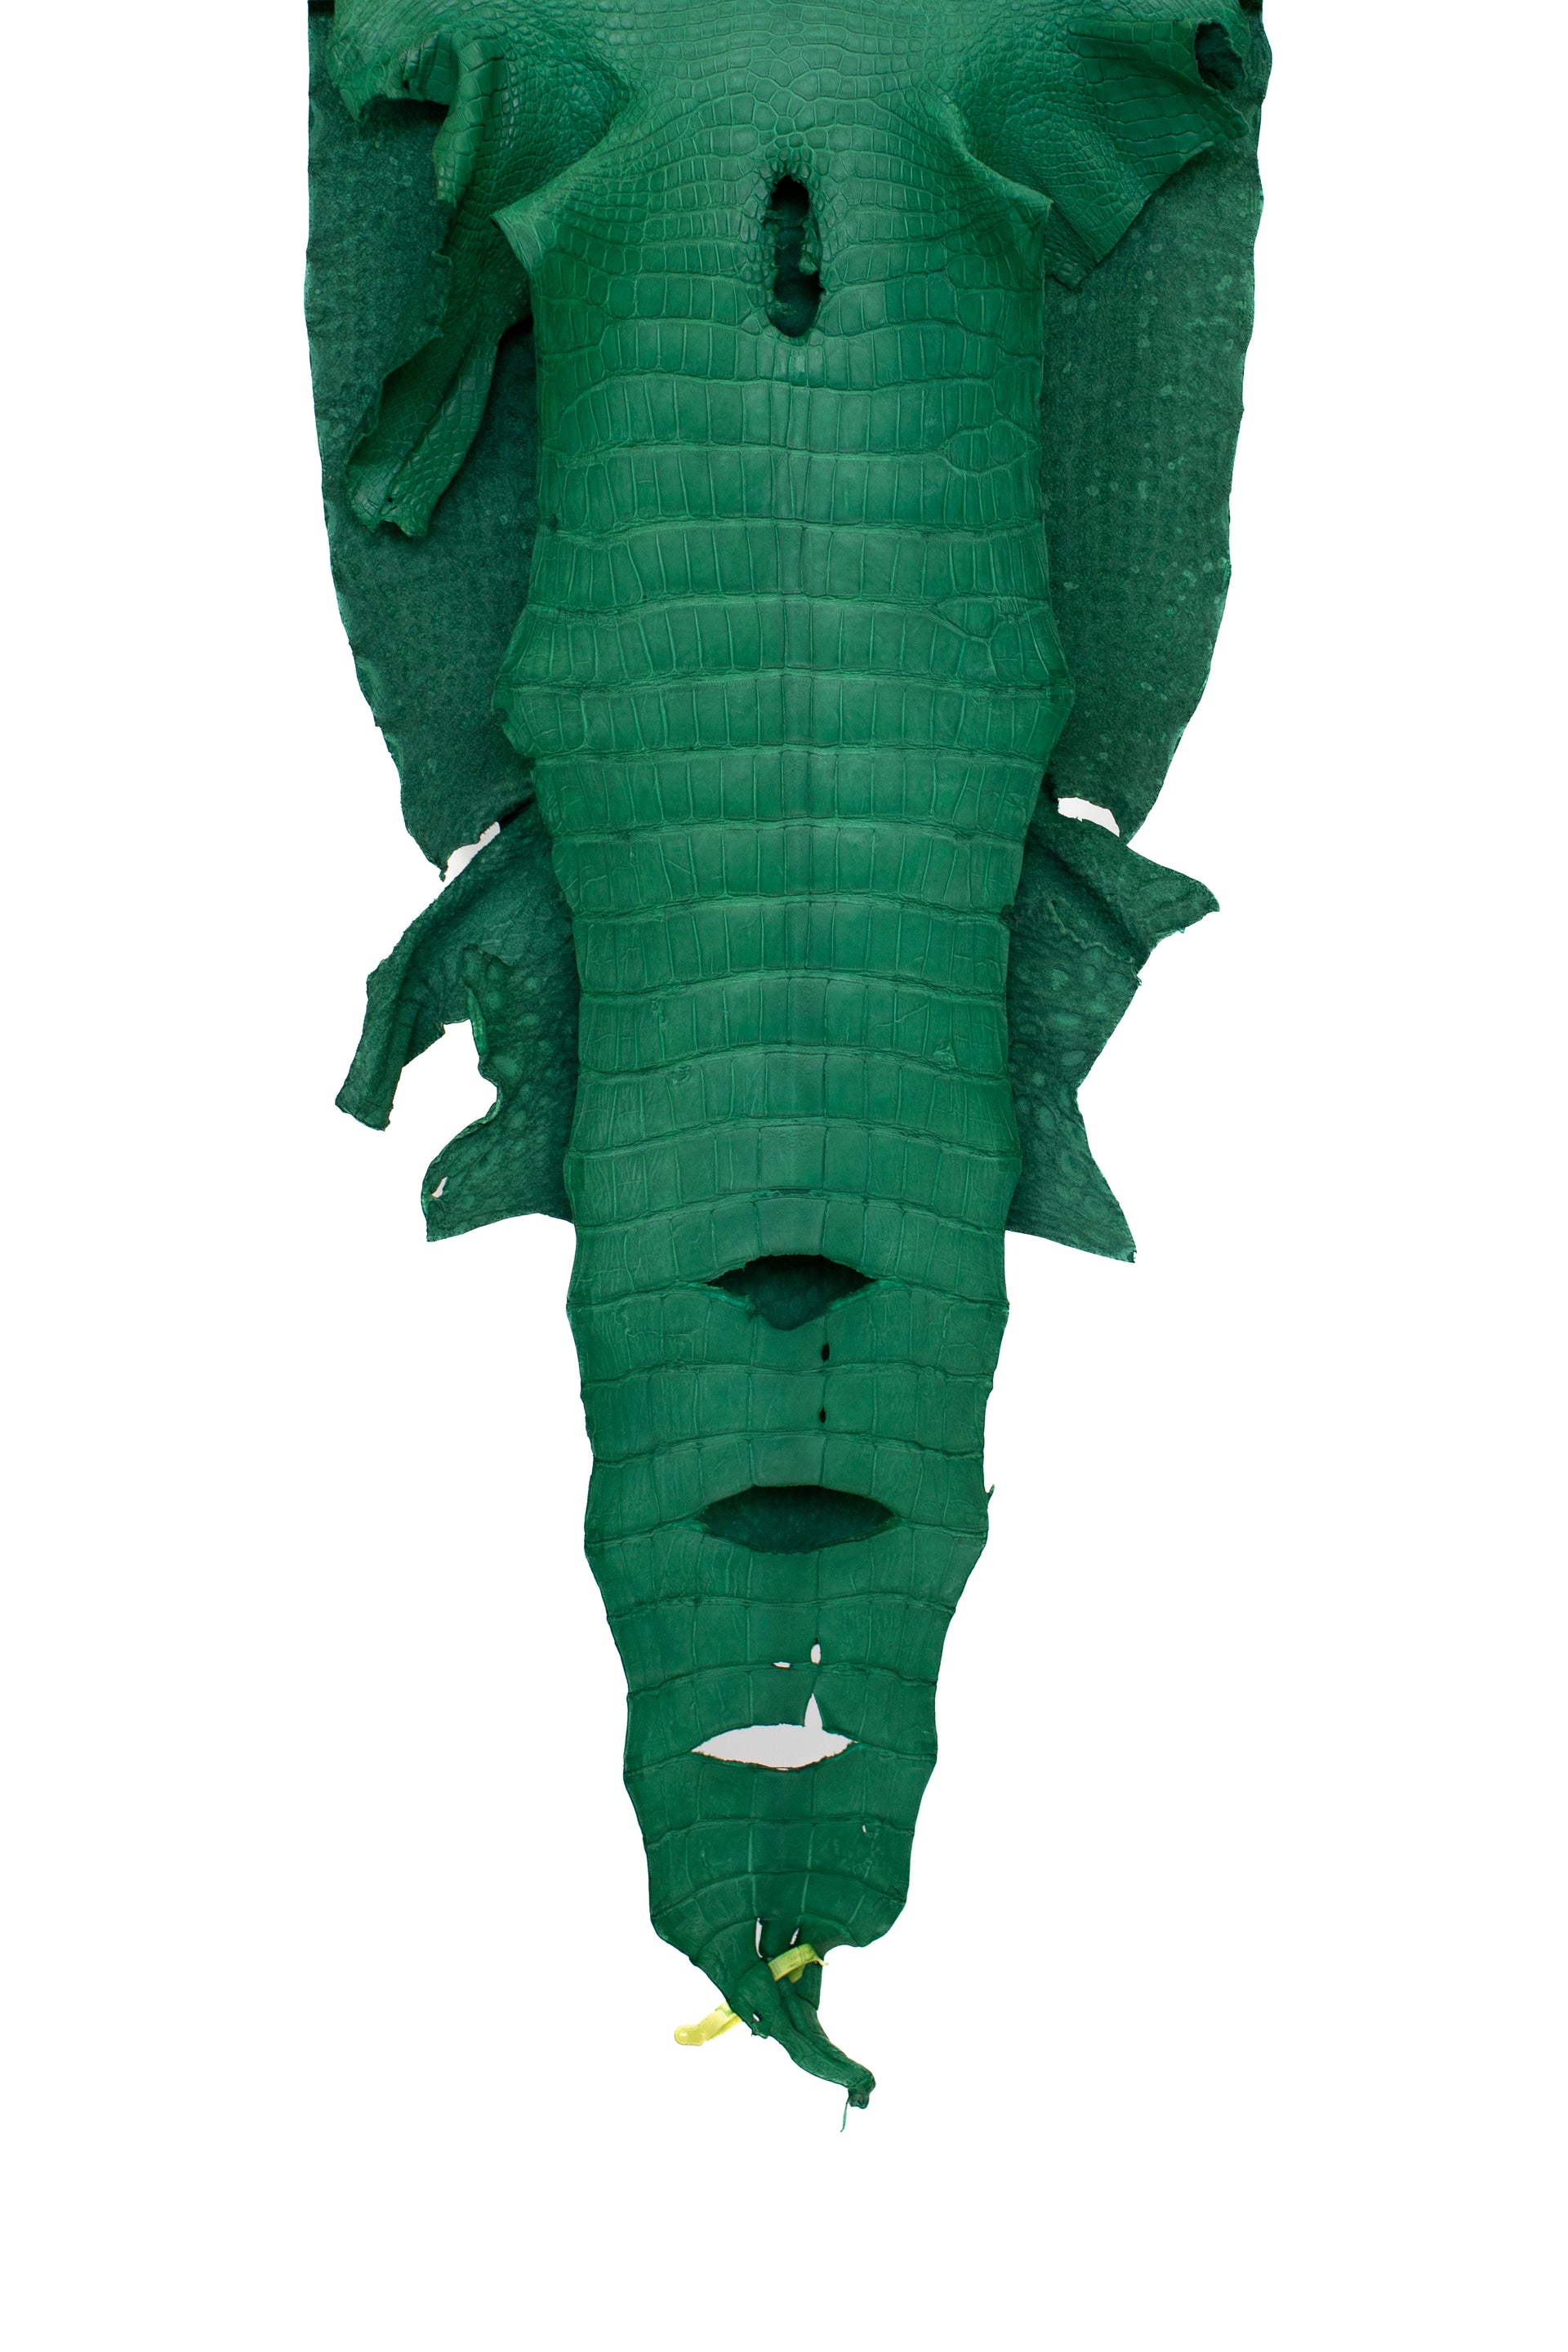 46 cm Grade 4/5 Kelly Green Matte Wild American Alligator Leather - Tag: LA22-0021164